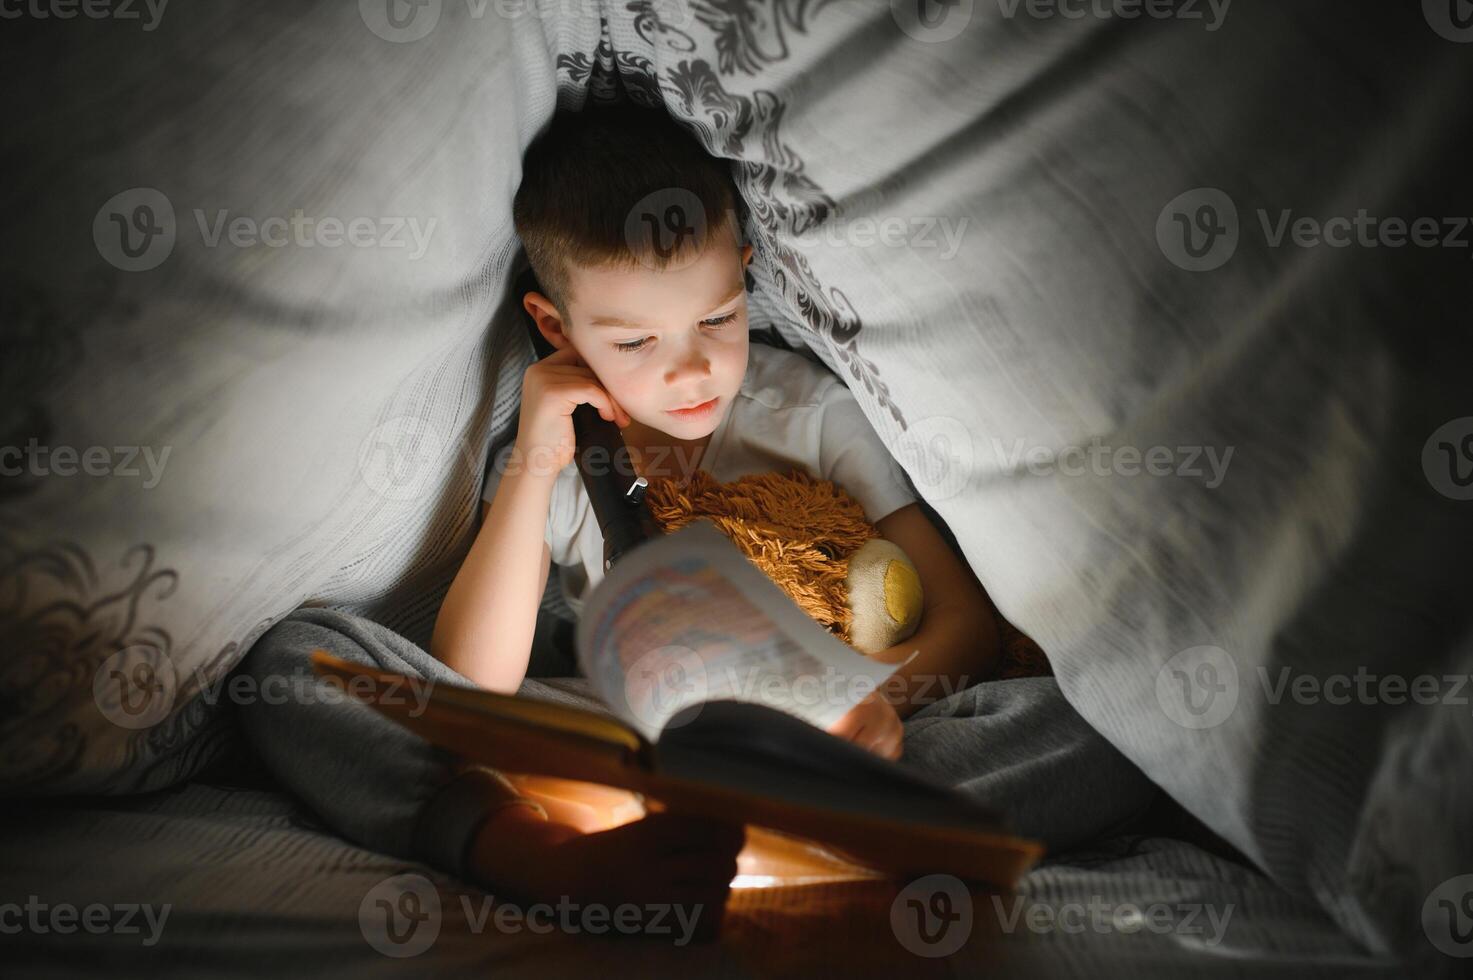 Garoto com lanterna lendo livro debaixo cobertor às lar. foto